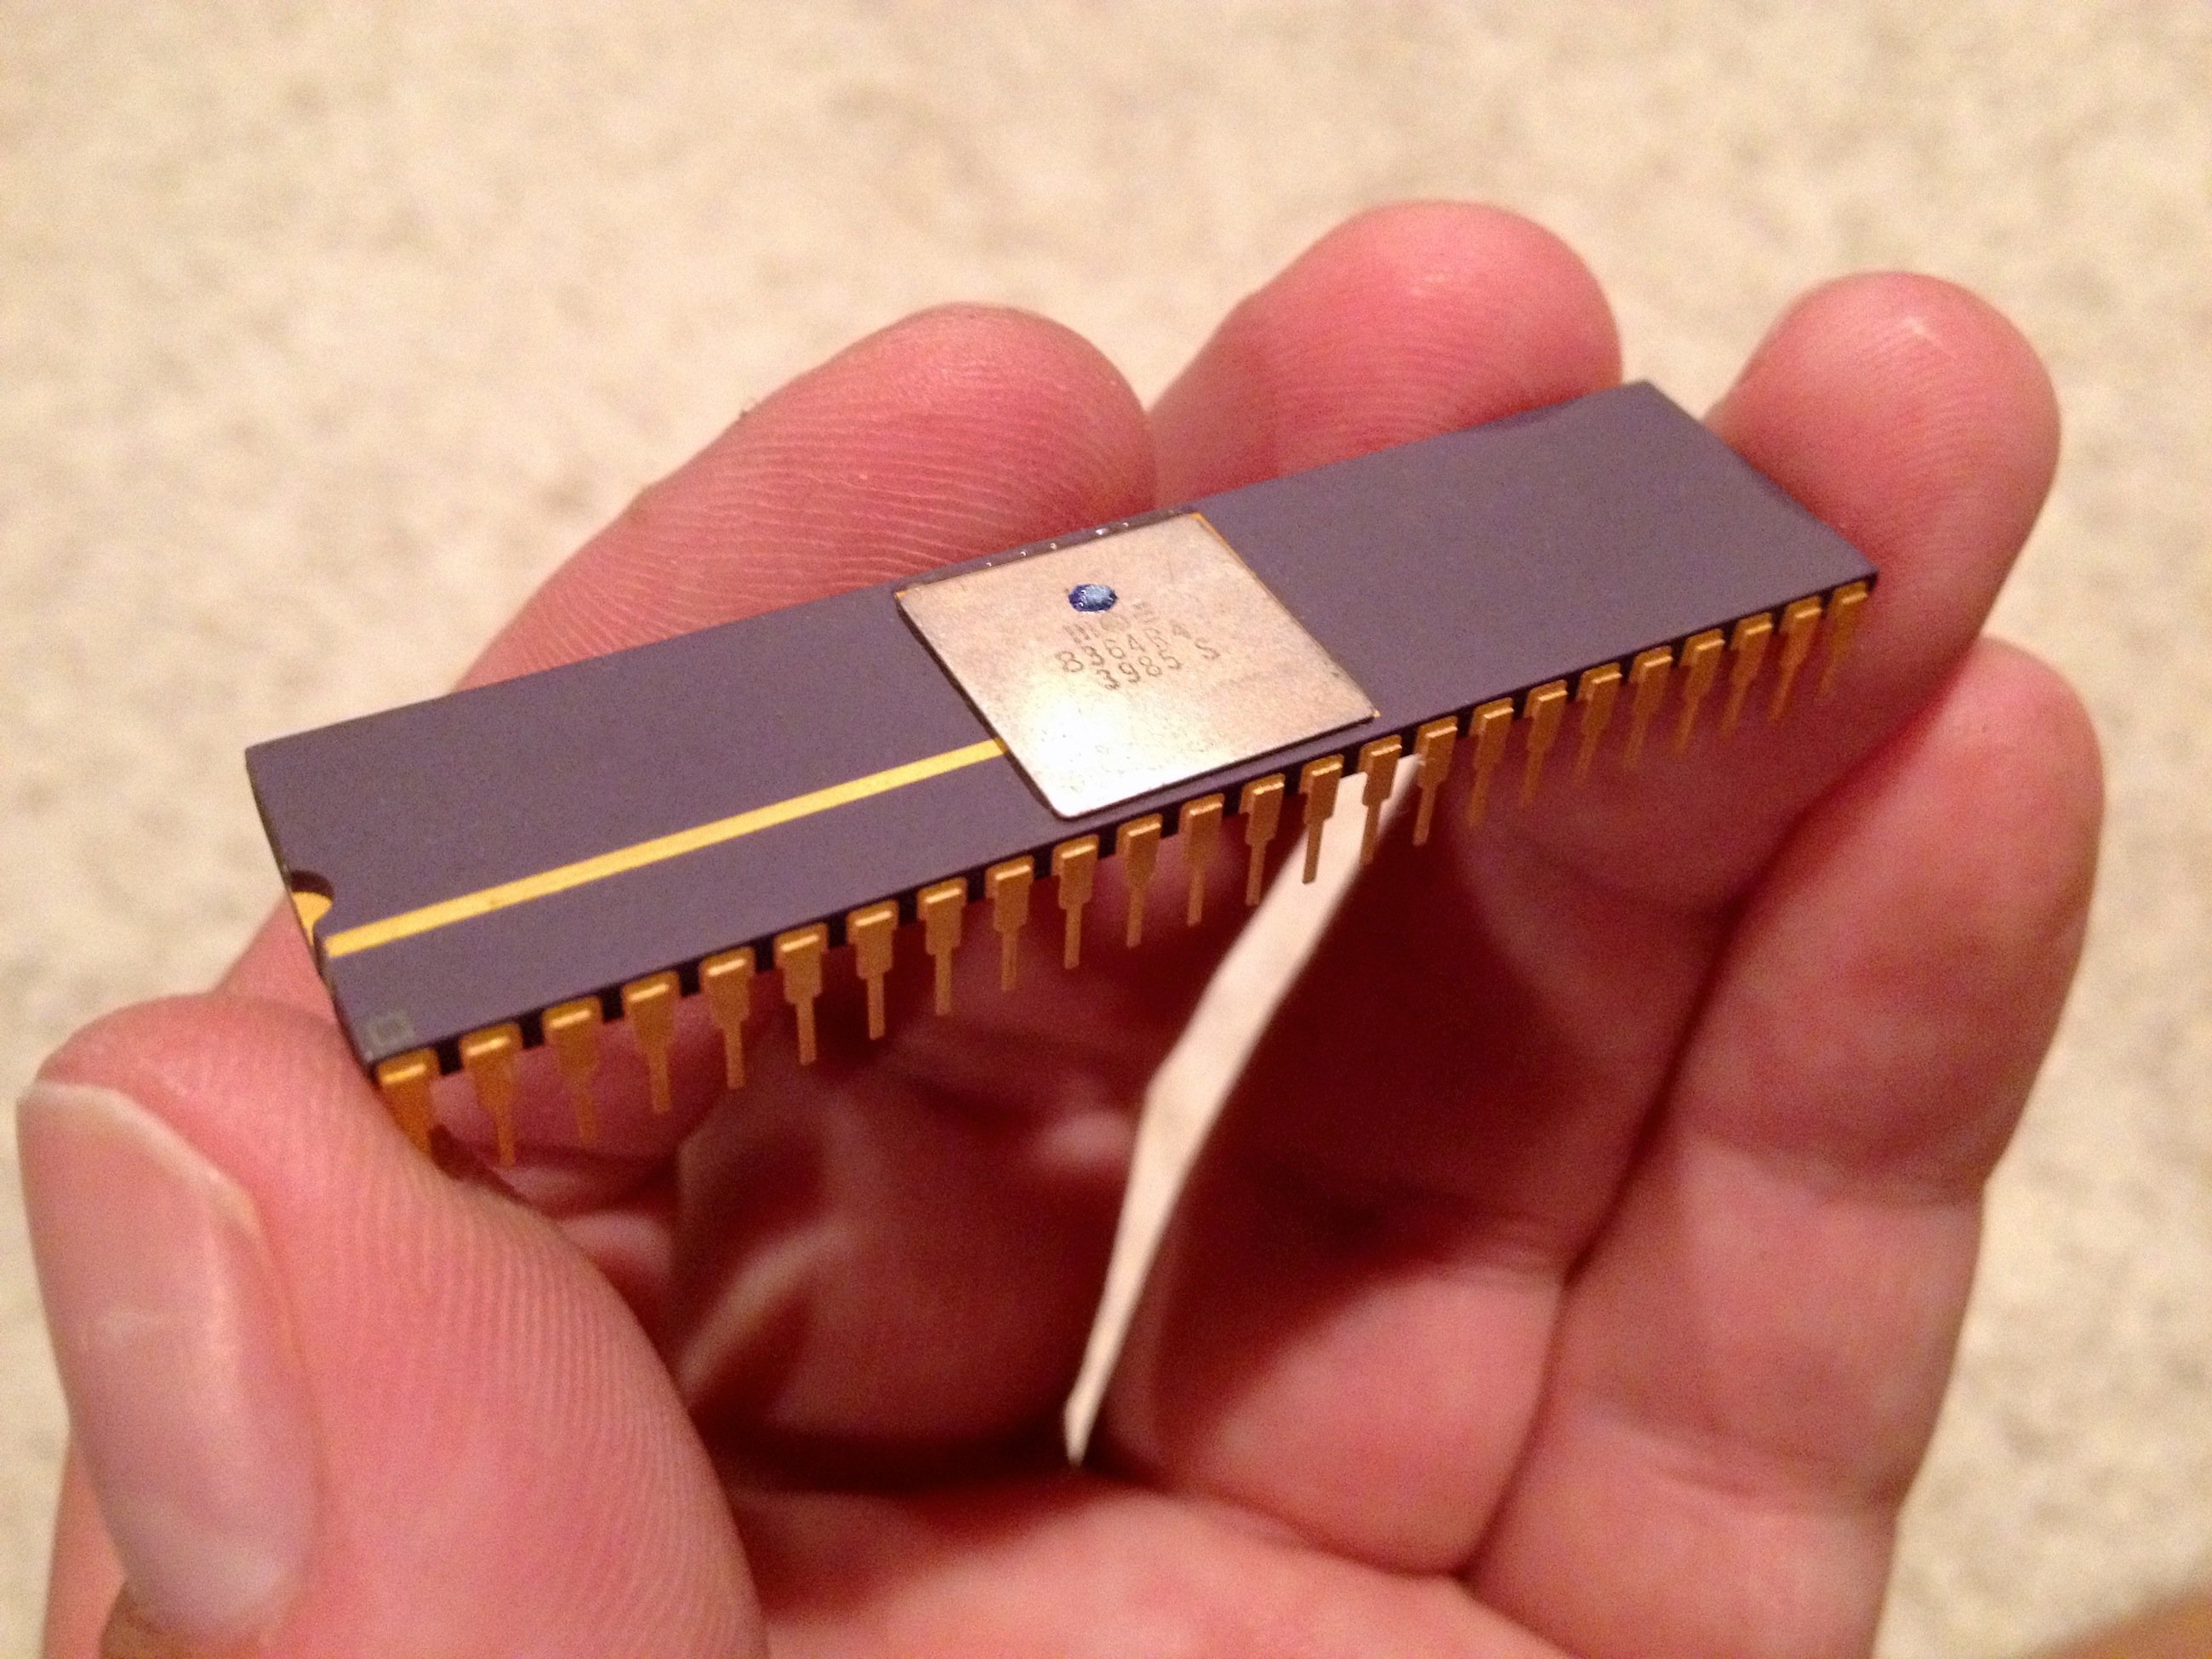 Soundchip Paula sorgte im Amiga 1000 für den unverwechselbaren 8-Bit-Sound.